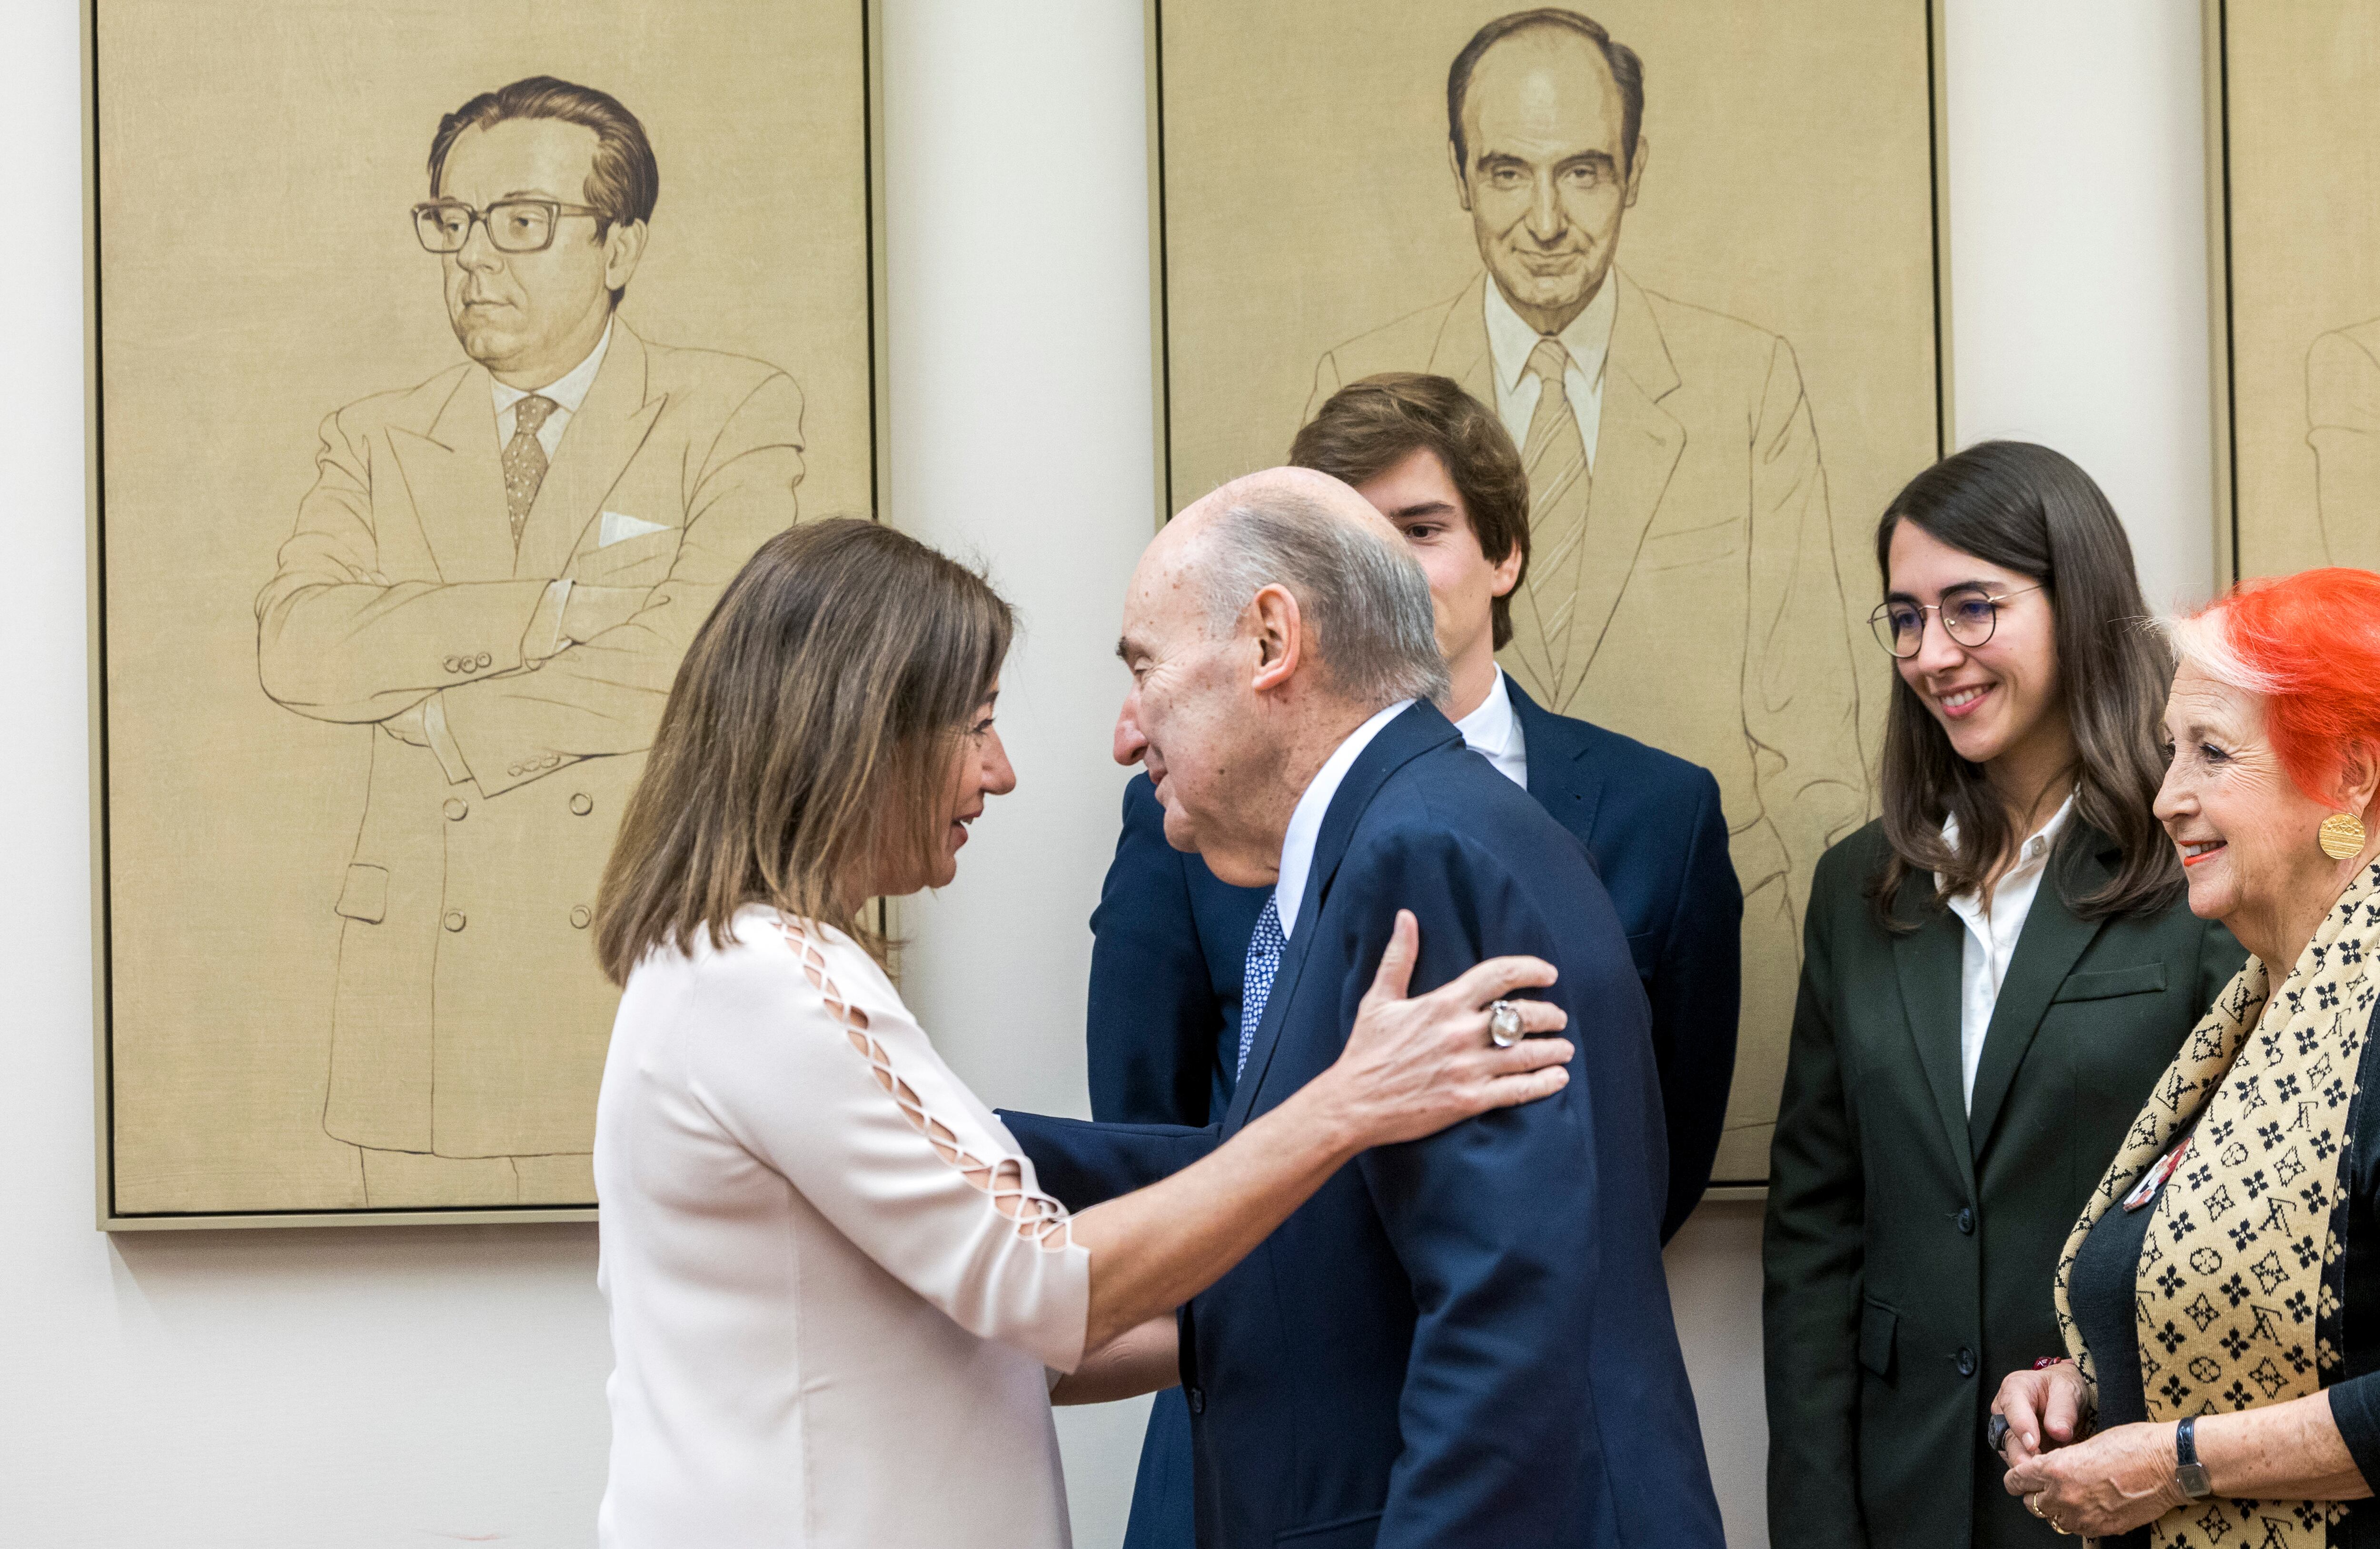 La presidenta del Congreso de los Diputados, Francina Armengol, saluda a Miquel Roca en presencia de los diputados más jóvenes, Miguel Ángel Sastre y Ada Santana, y la periodista Rosa María Calaf (a la derecha).